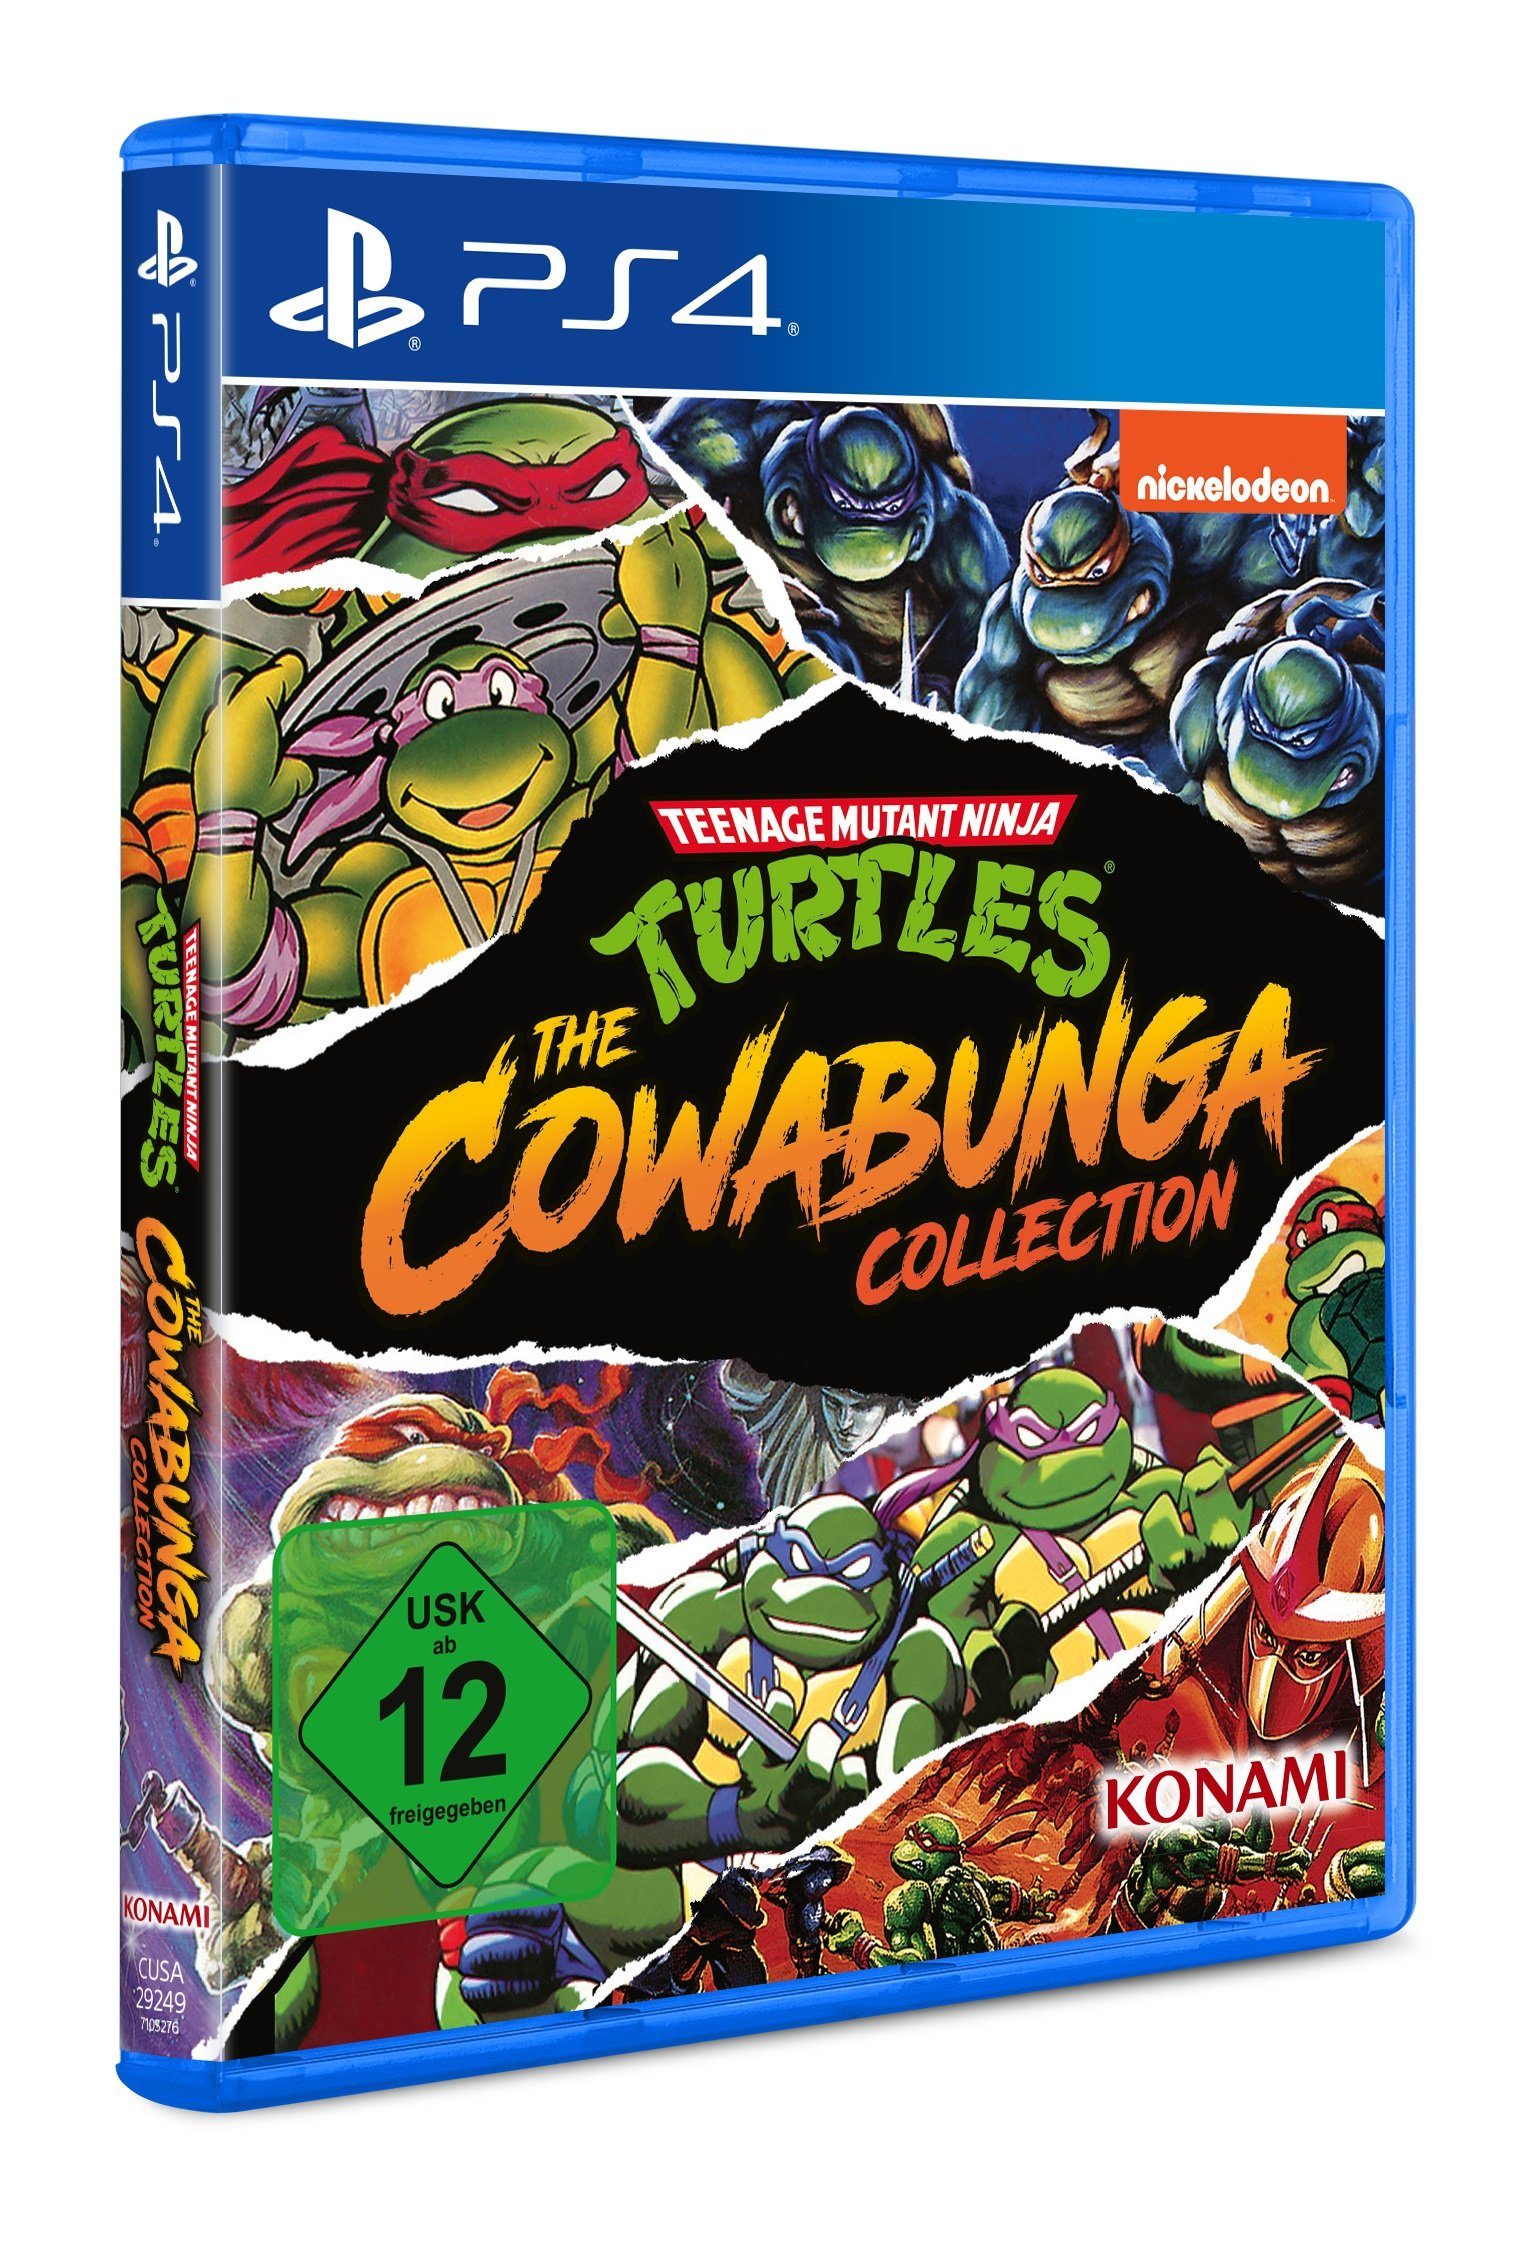 Konami The Teenage Mutant Collection Turtles Ninja Cowabunga 4 PlayStation -